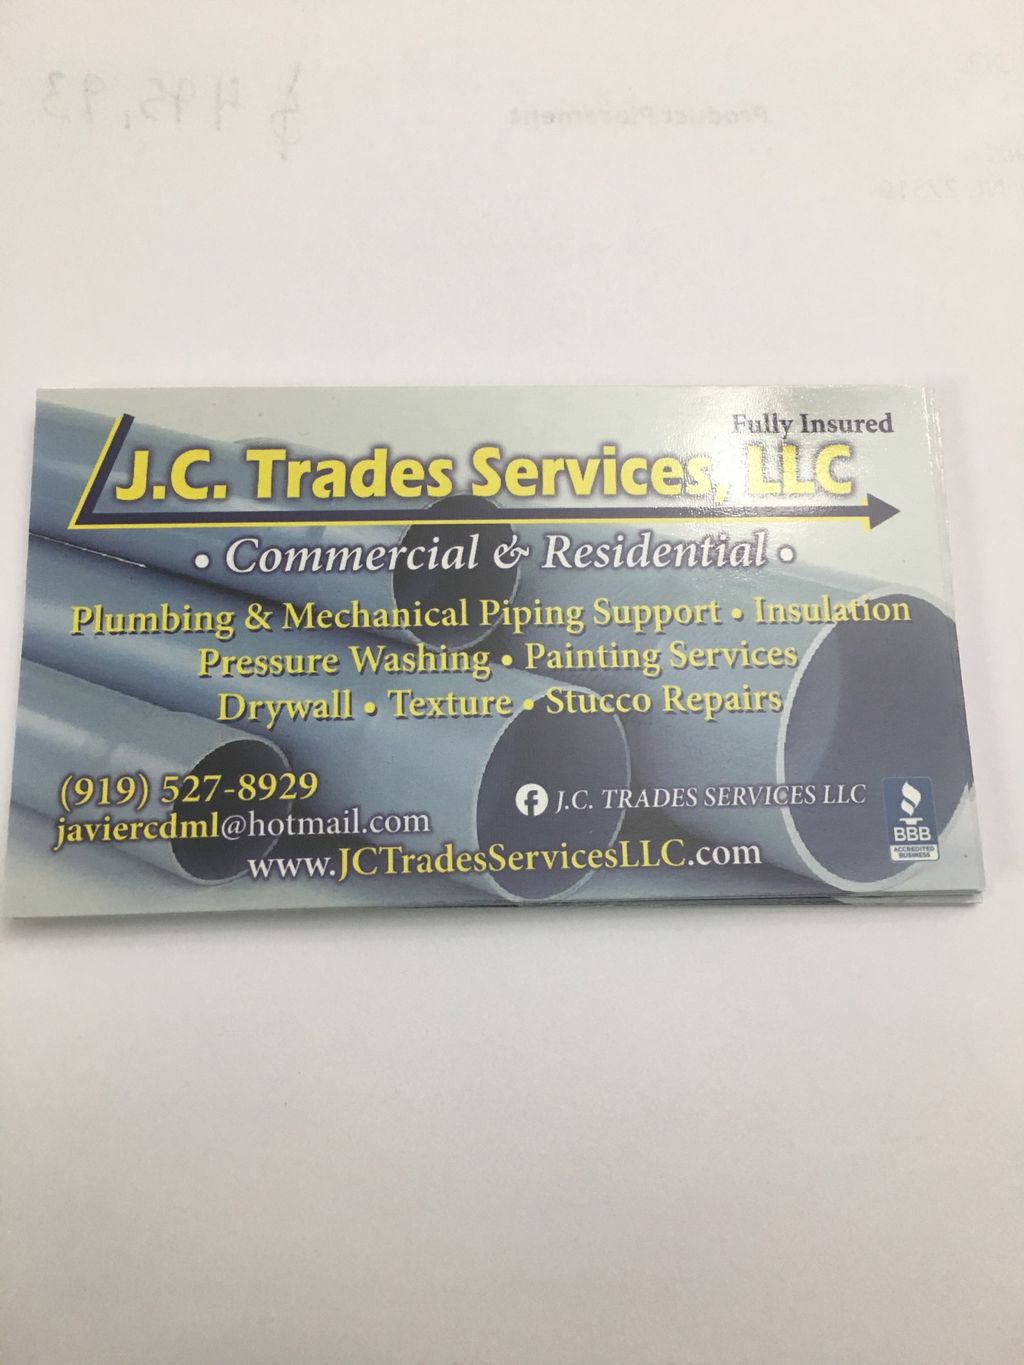 J.C. Trades Services LLC